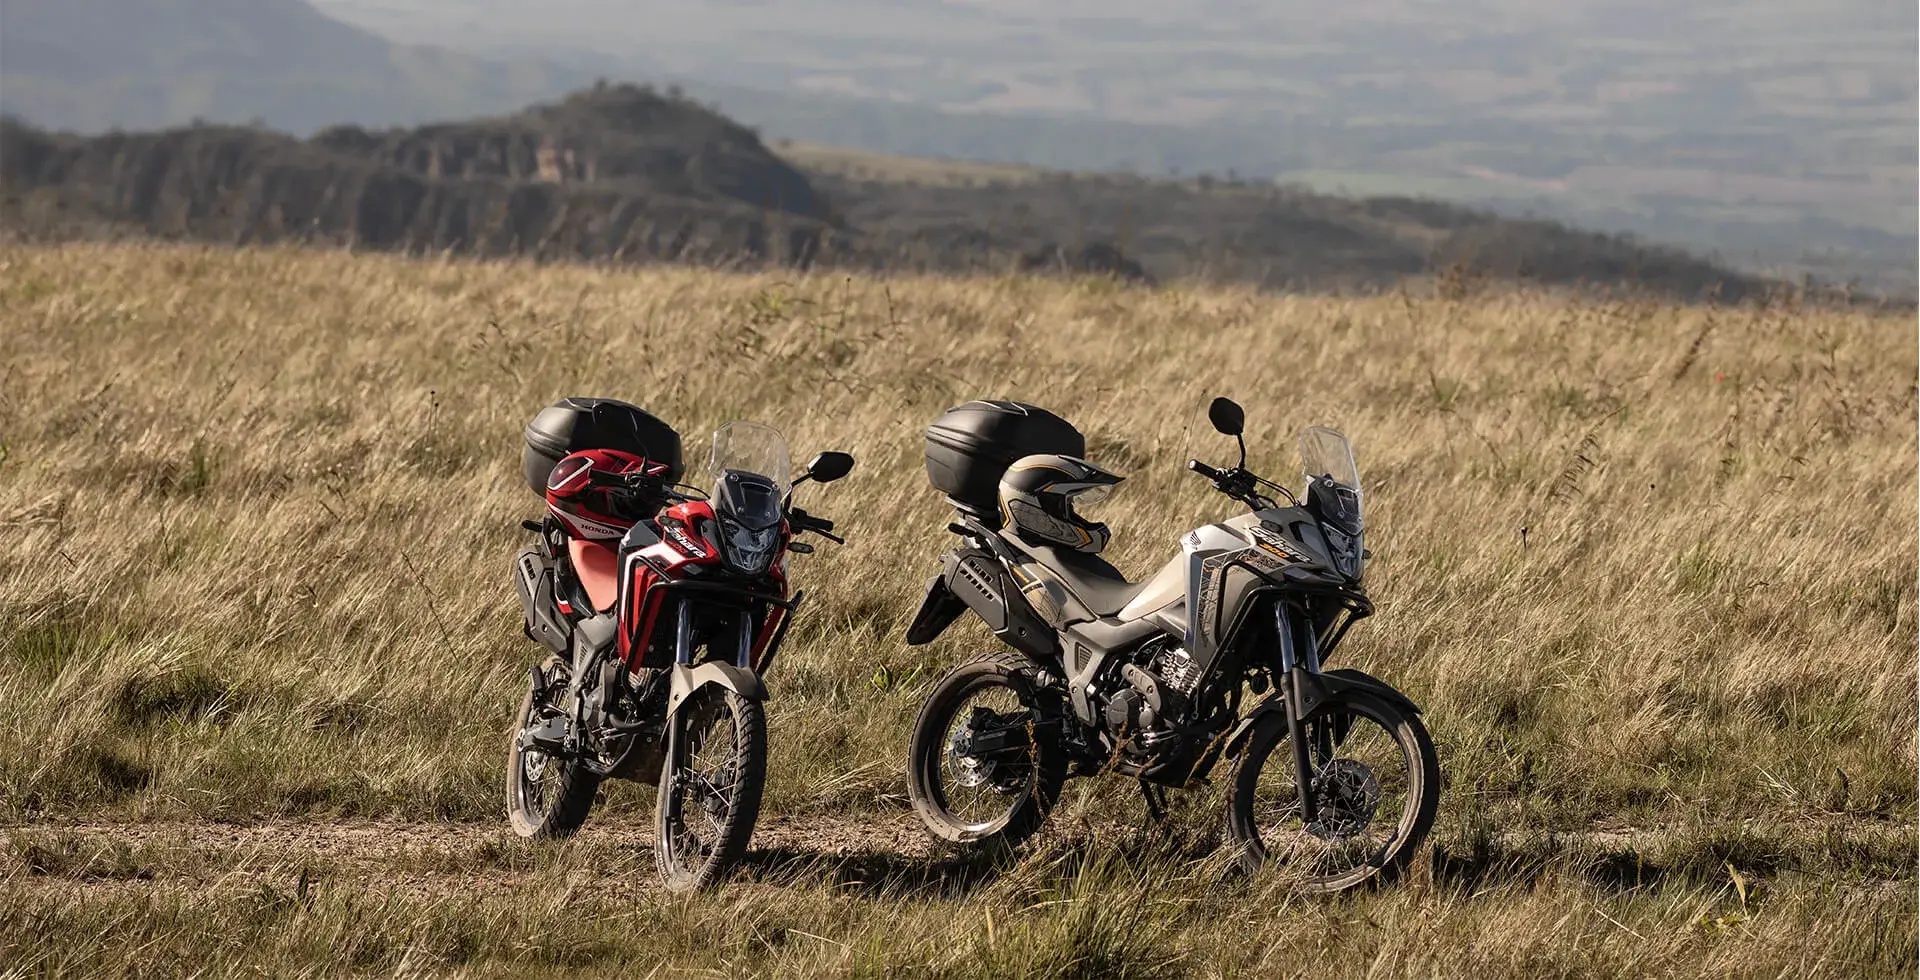 Motos Honda Sahara 300 Adventure e Rally com capacete no banco em paisagem de mato e montanha 